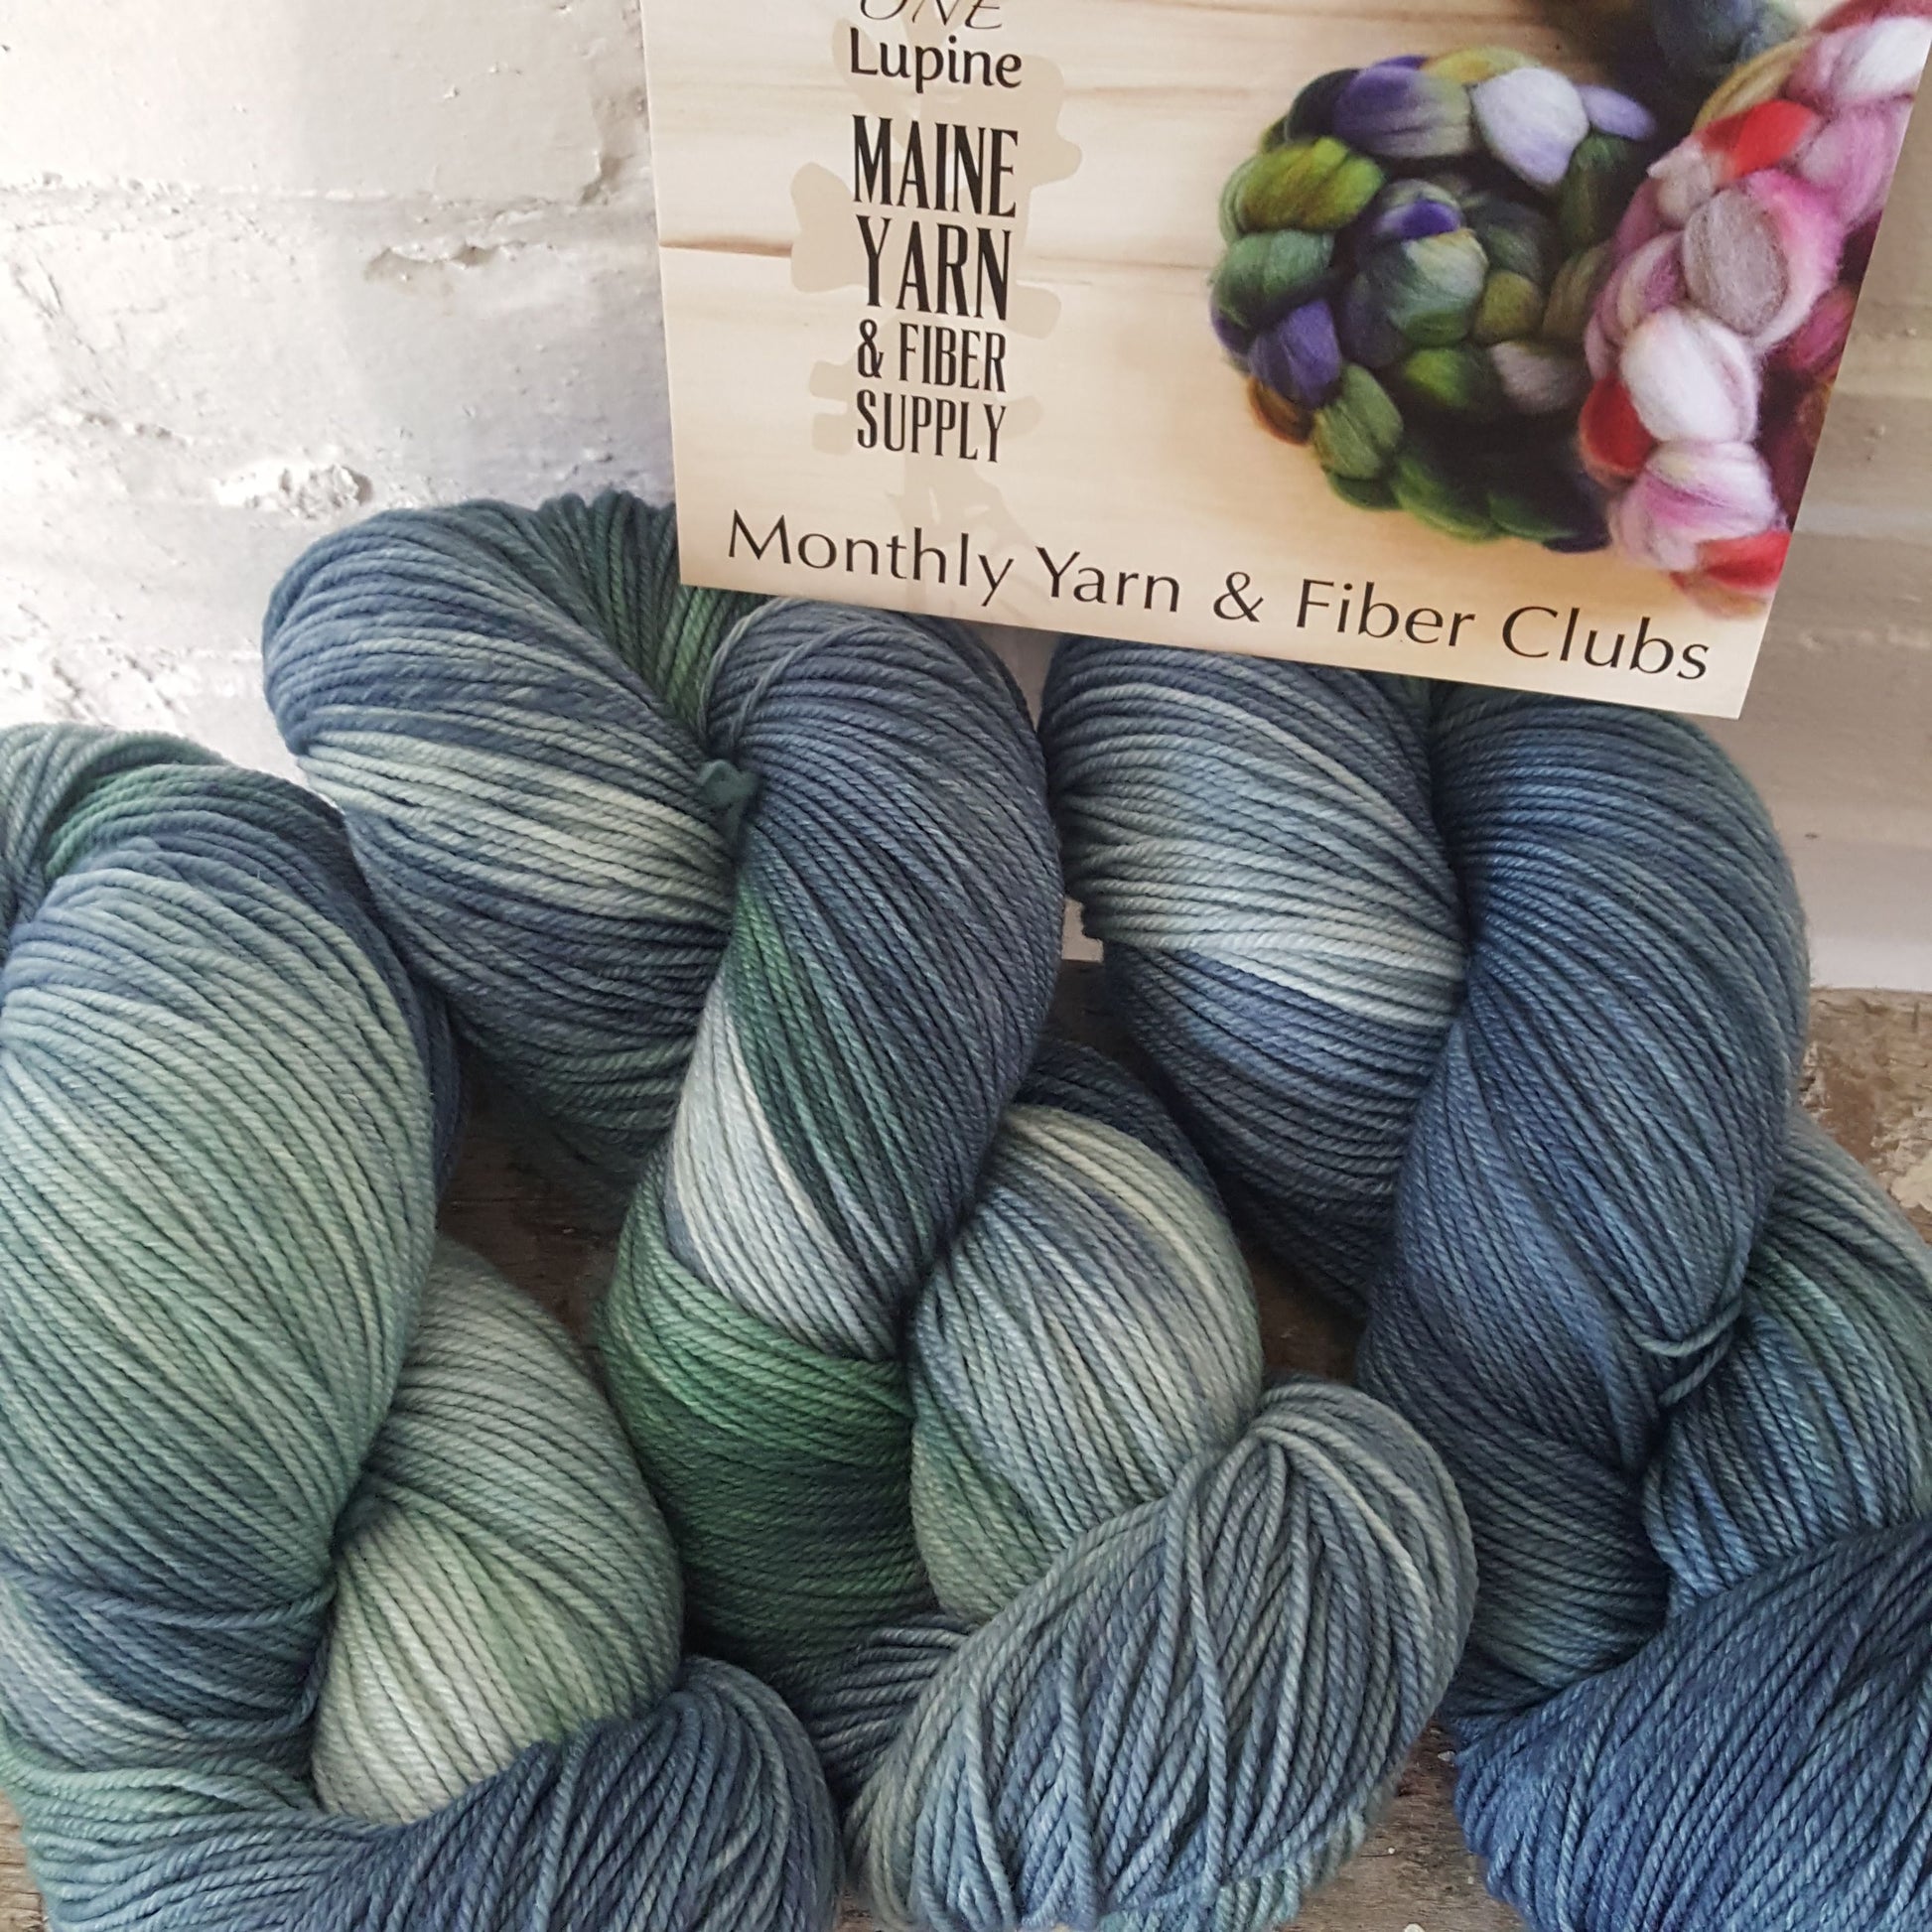 Monthly Yarn Club - Maine Yarn & Fiber Supply